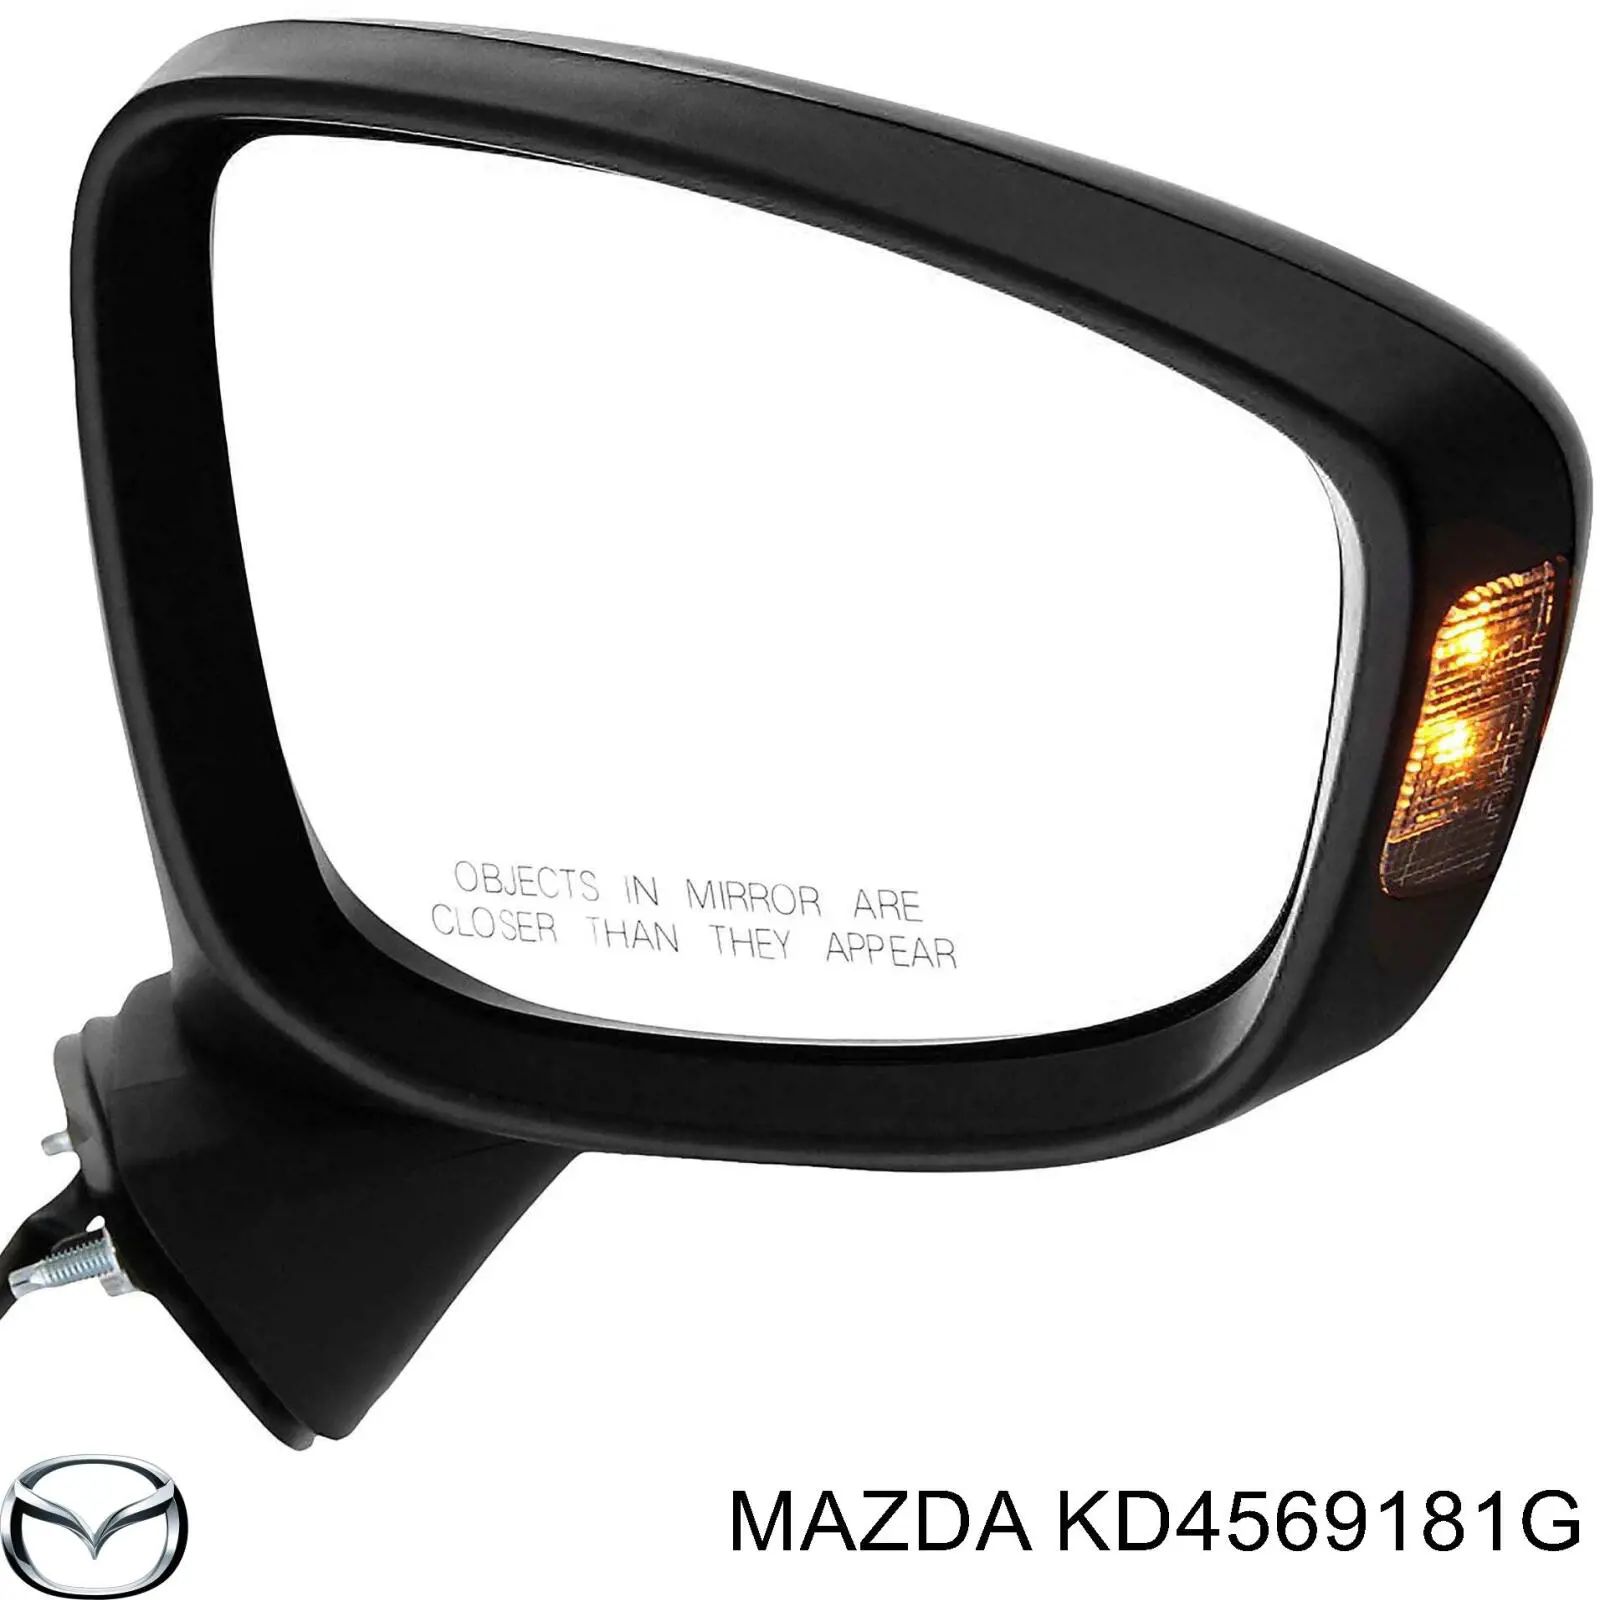 KD5369181H Mazda espejo retrovisor izquierdo